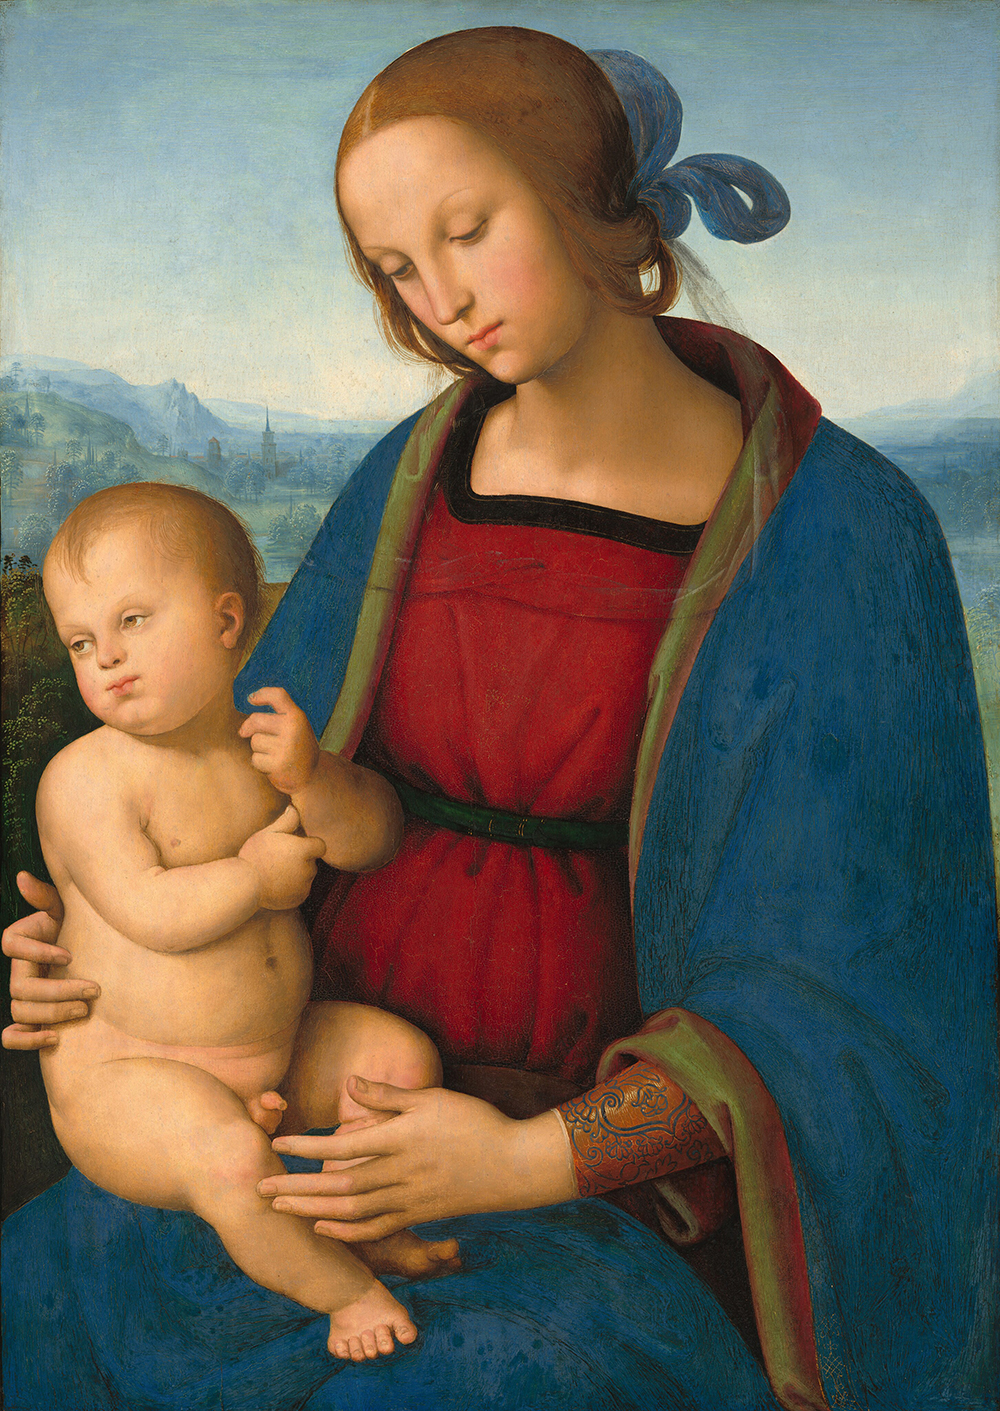 Vista desde el regazo hacia arriba, una mujer con una túnica azul marino sobre un vestido rojo carmesí sostiene a un bebé desnudo en su regazo en esta pintura vertical.